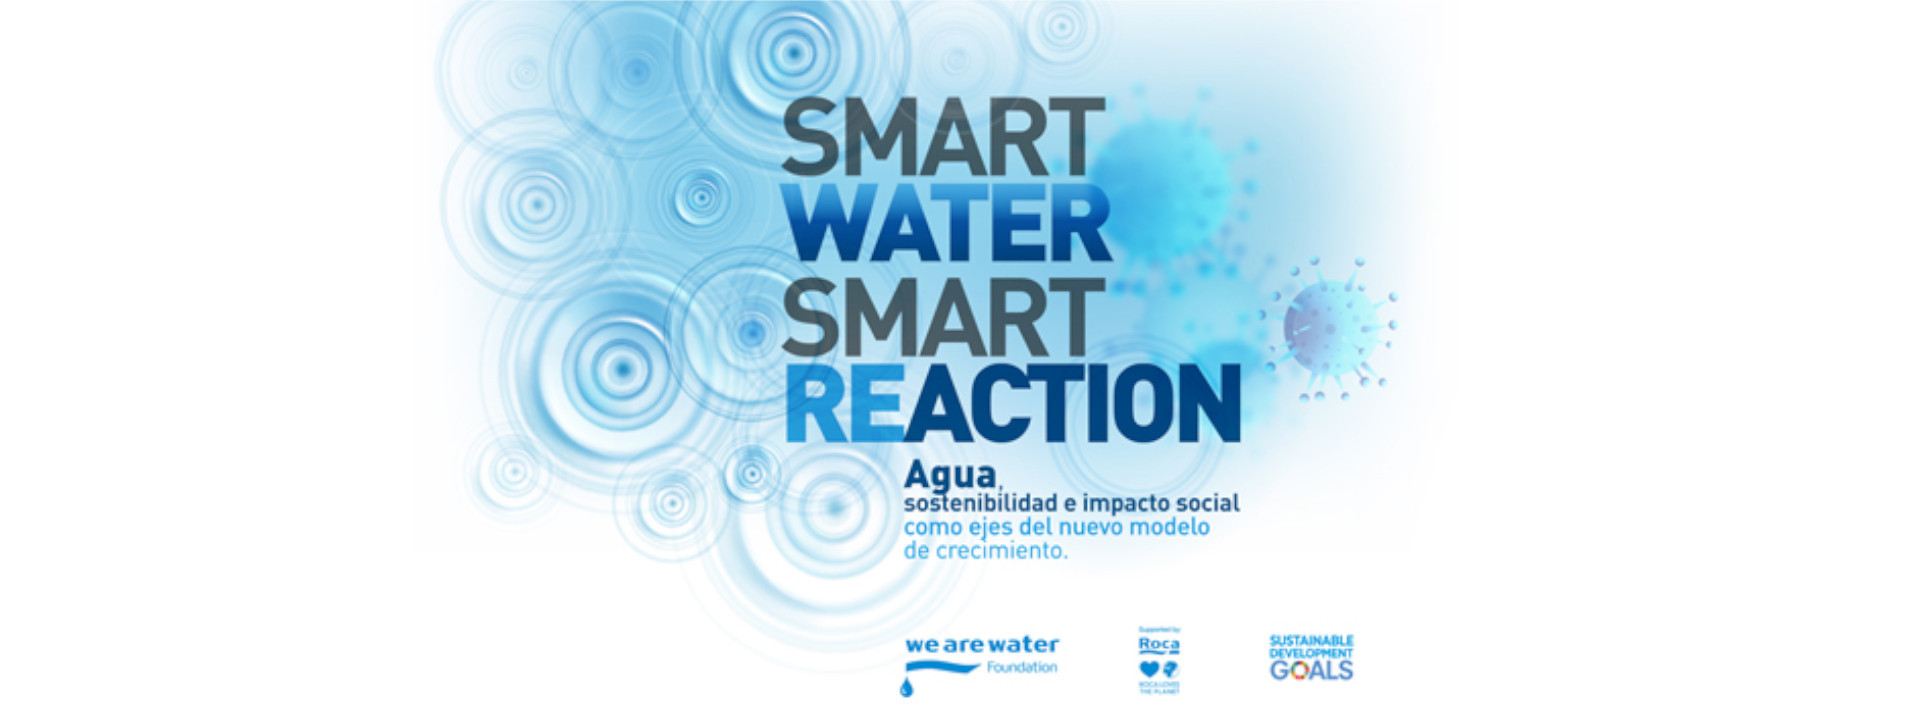 Smart Water, Smart Reaction